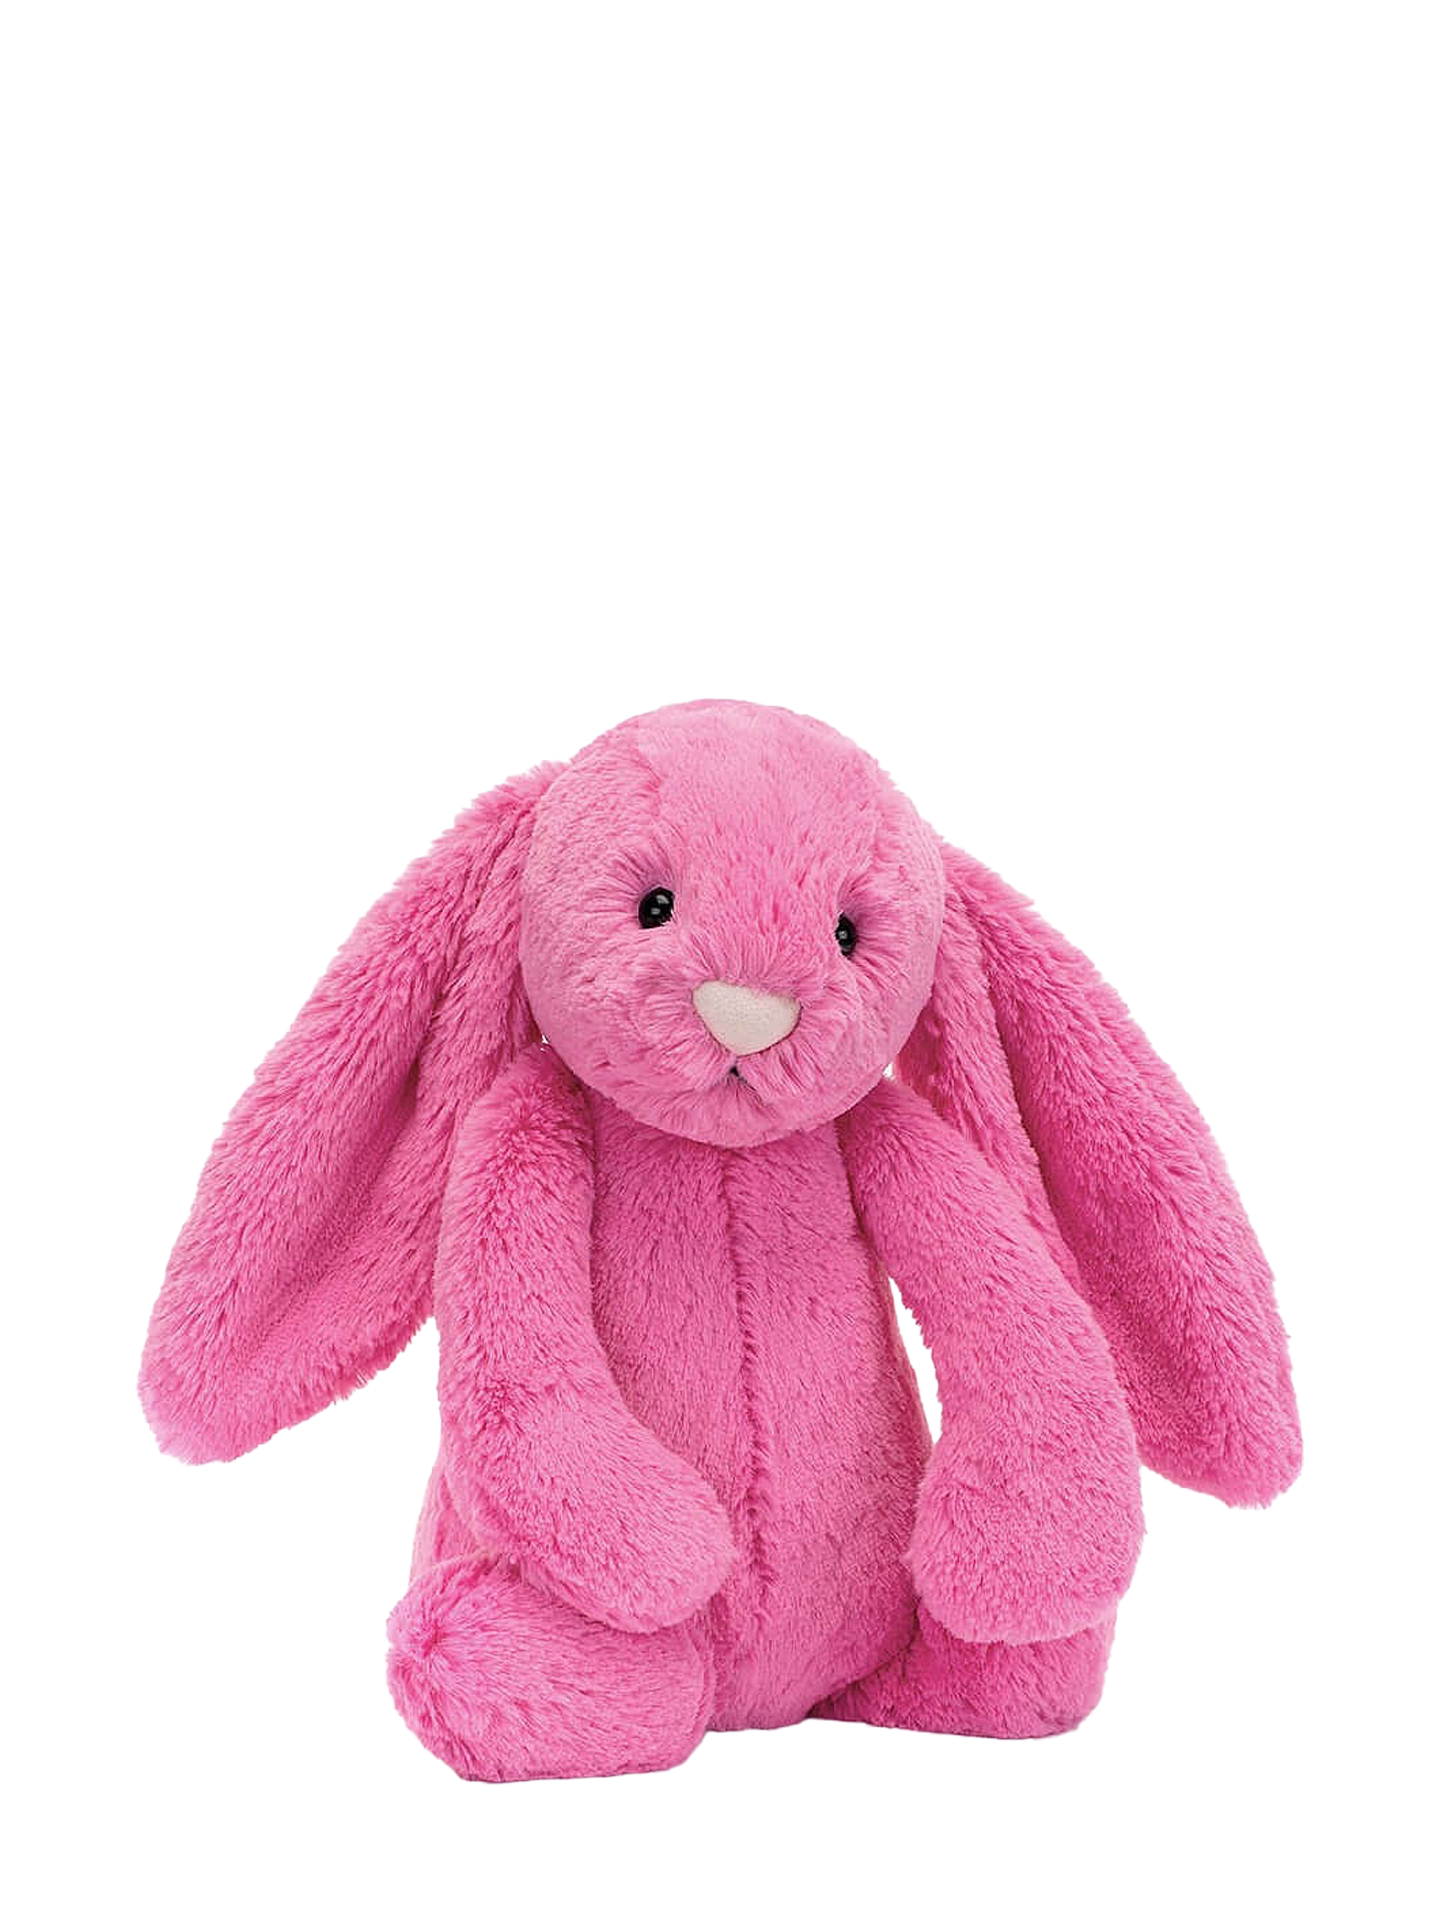 Bashful hot pink bunny, medium